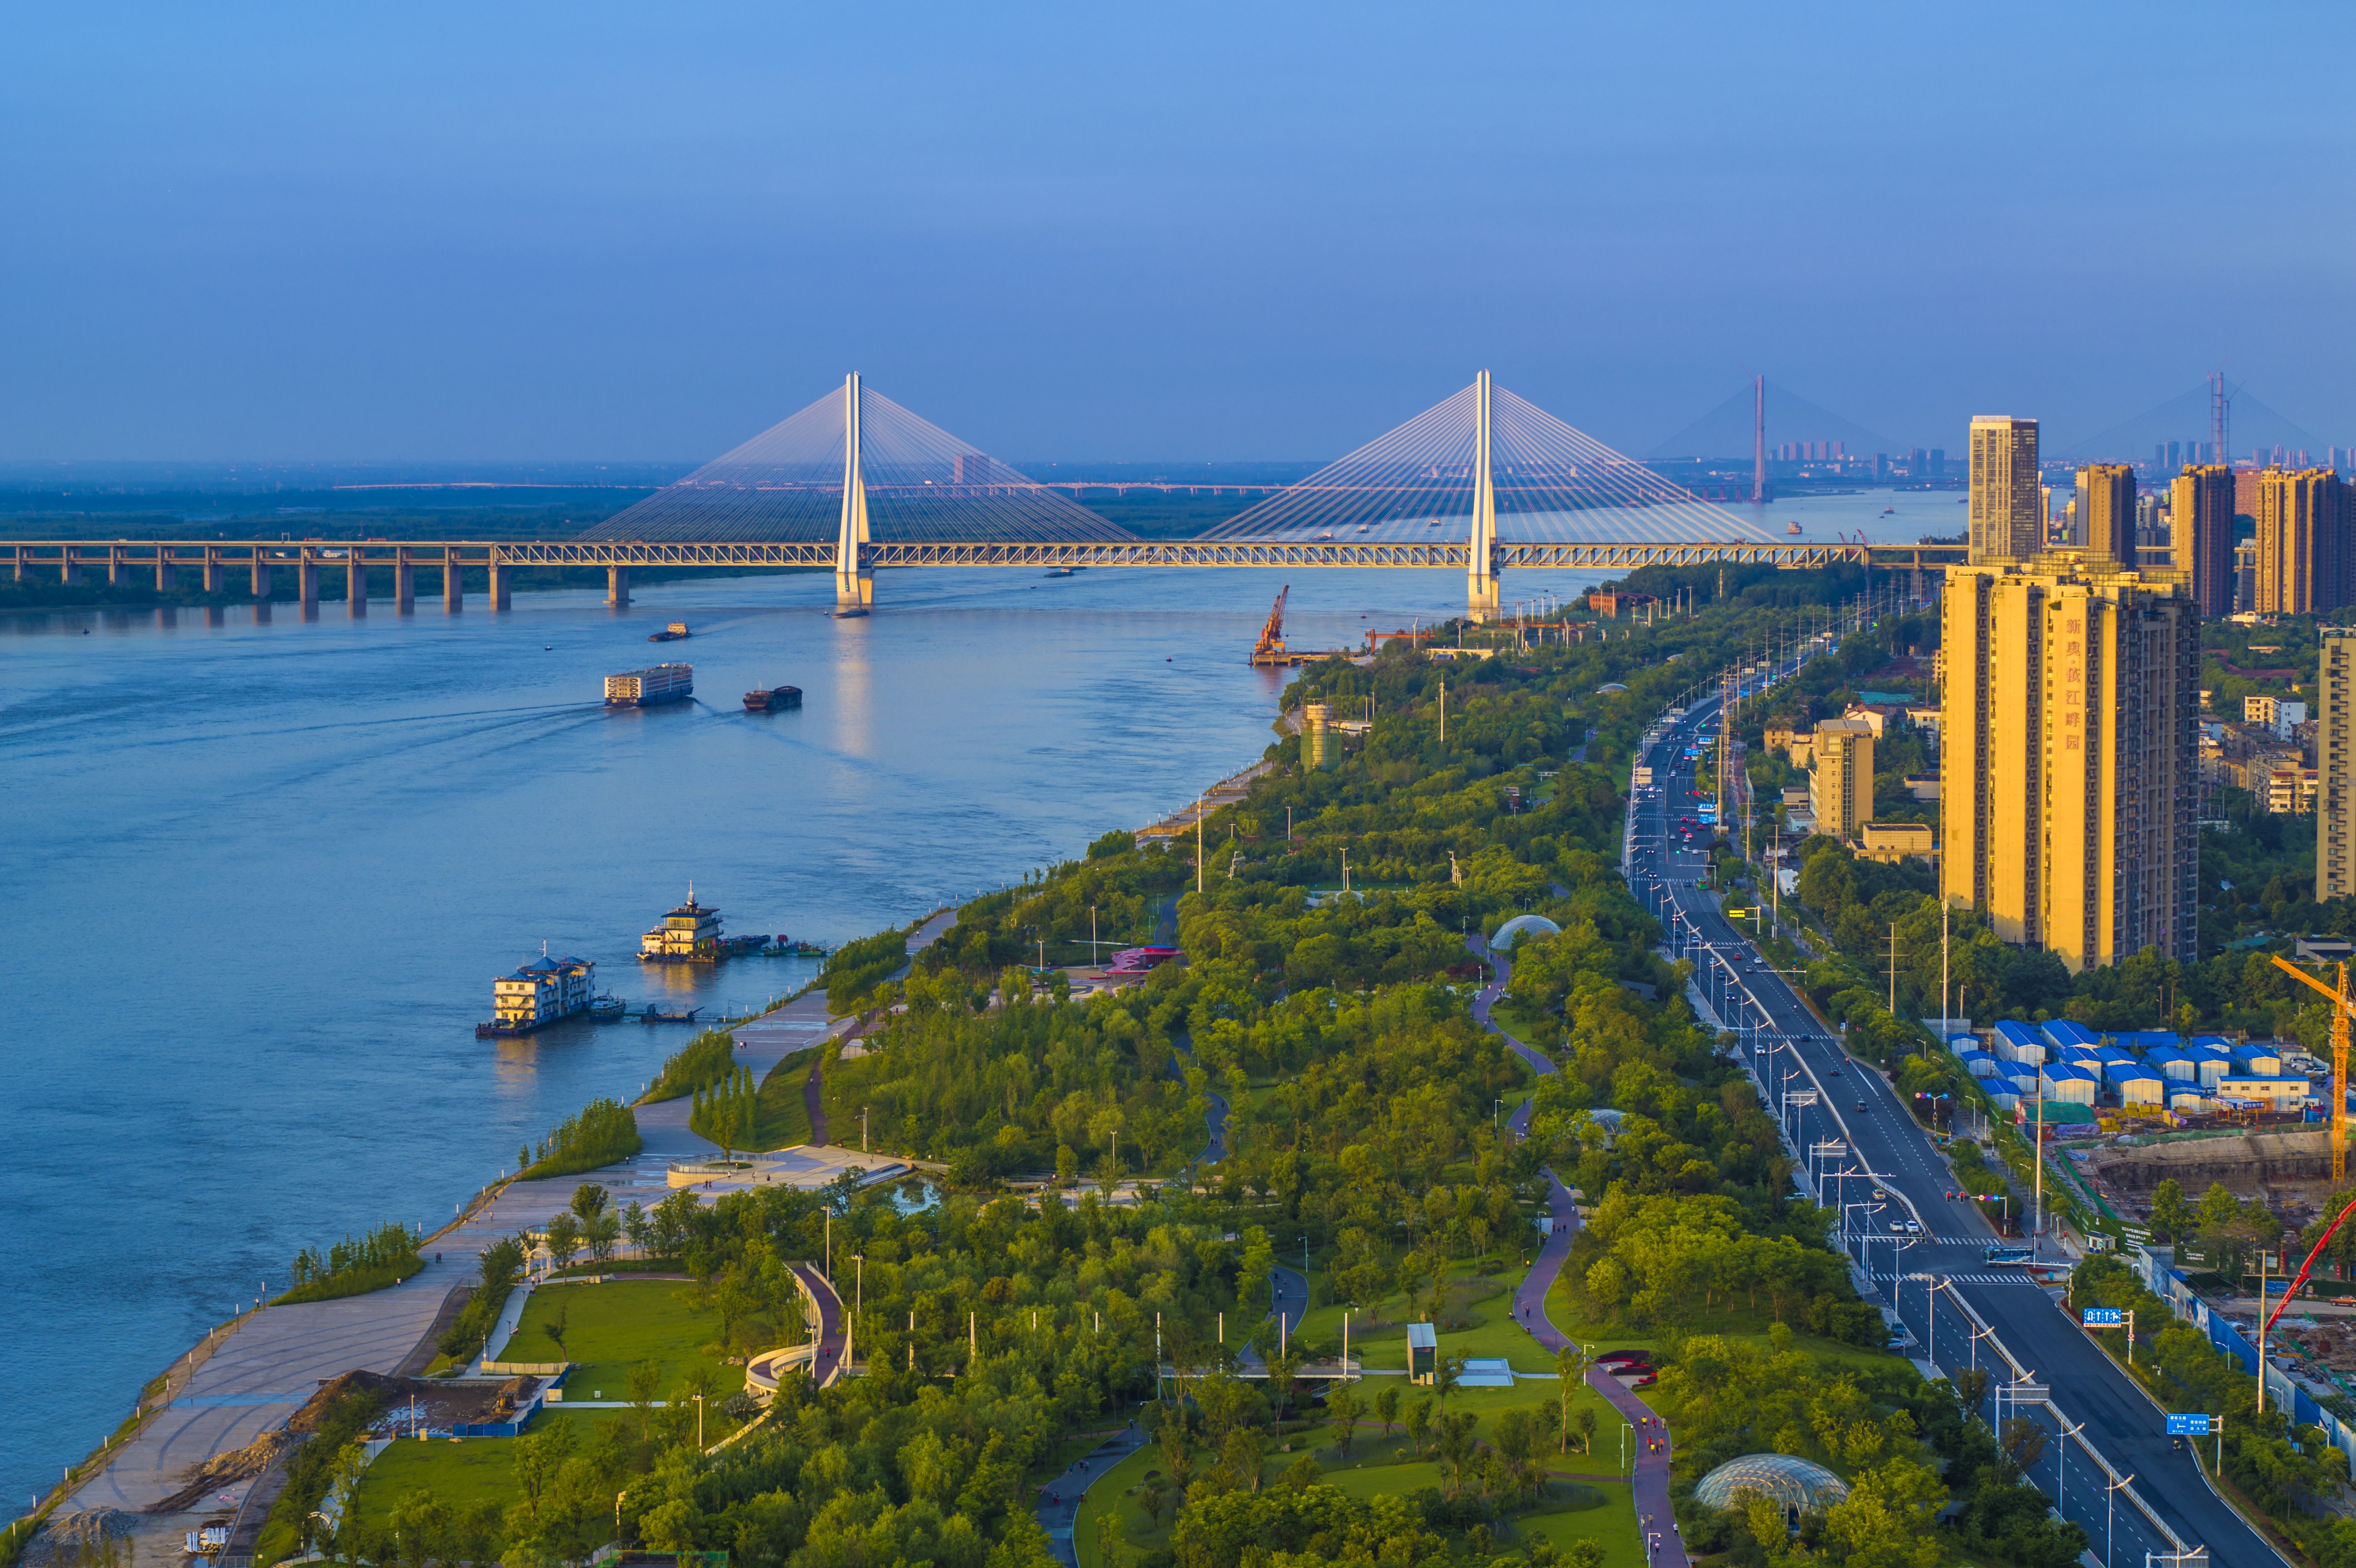 武汉是华中地区最大的工业中心城市,在汽车制造,钢铁制造等领域蹿于